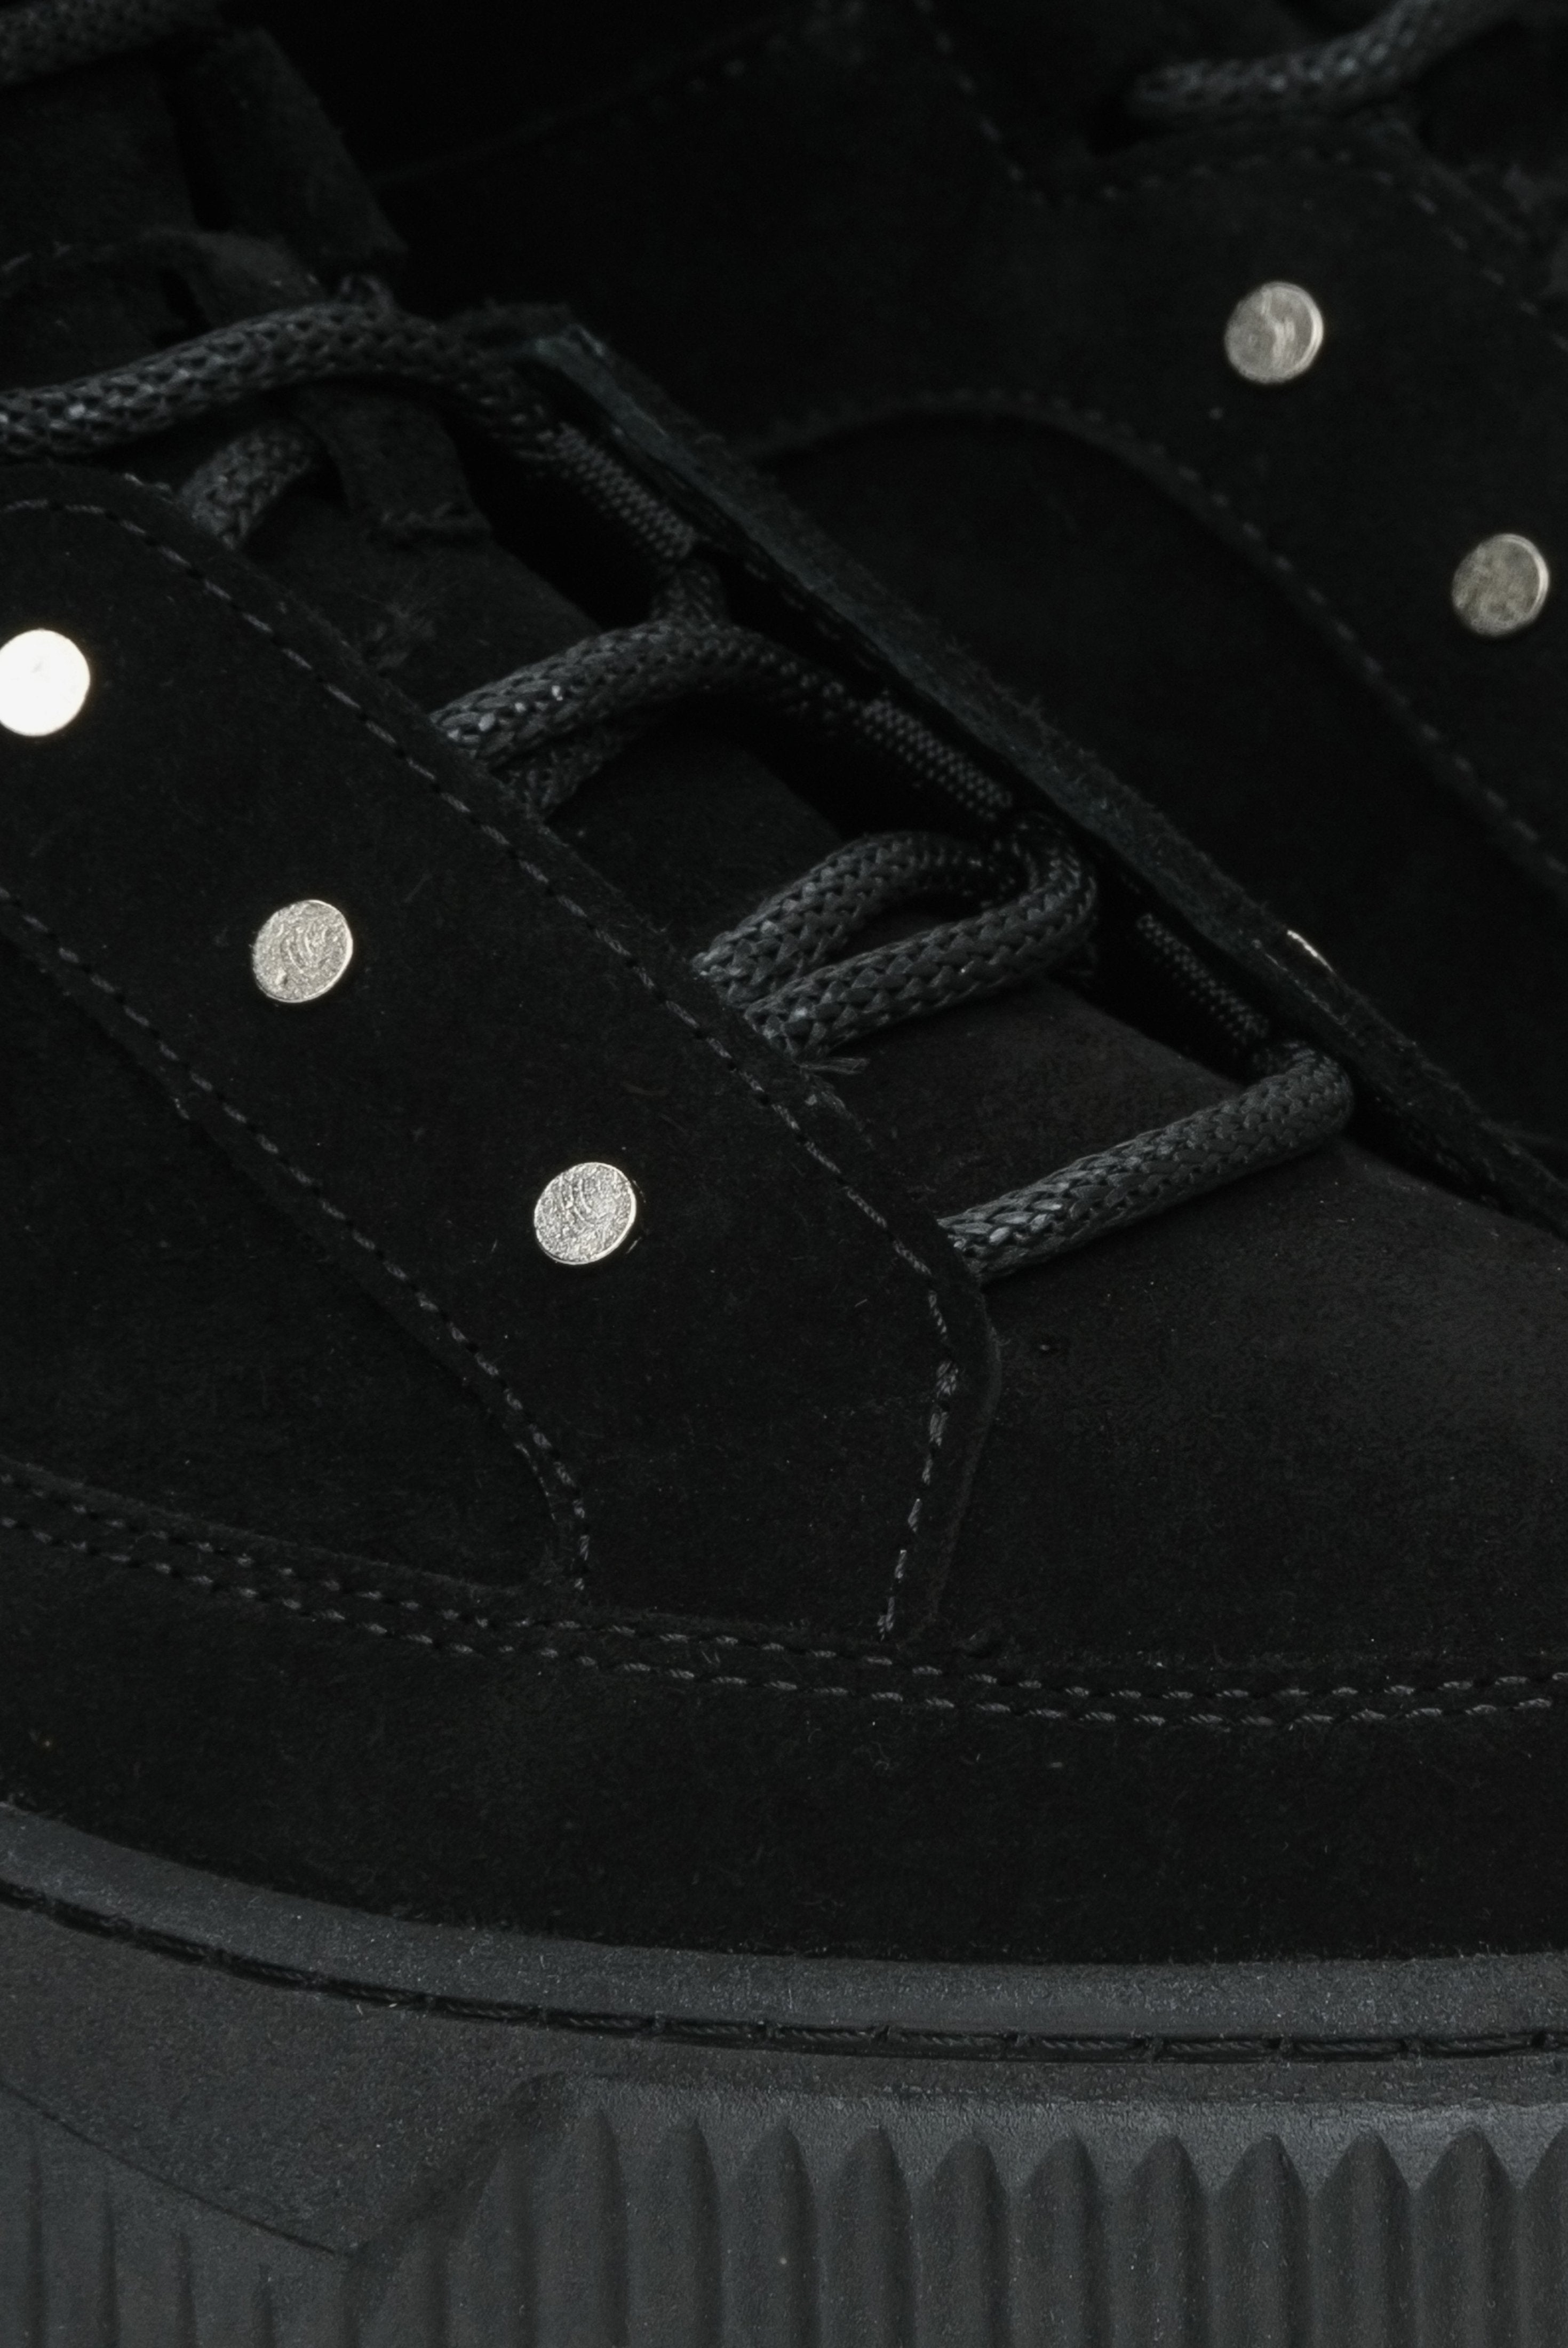 Czarne, damskie, wysokie sneakersy zimowe ze sznurowaniem - podgląd wsadu buta.